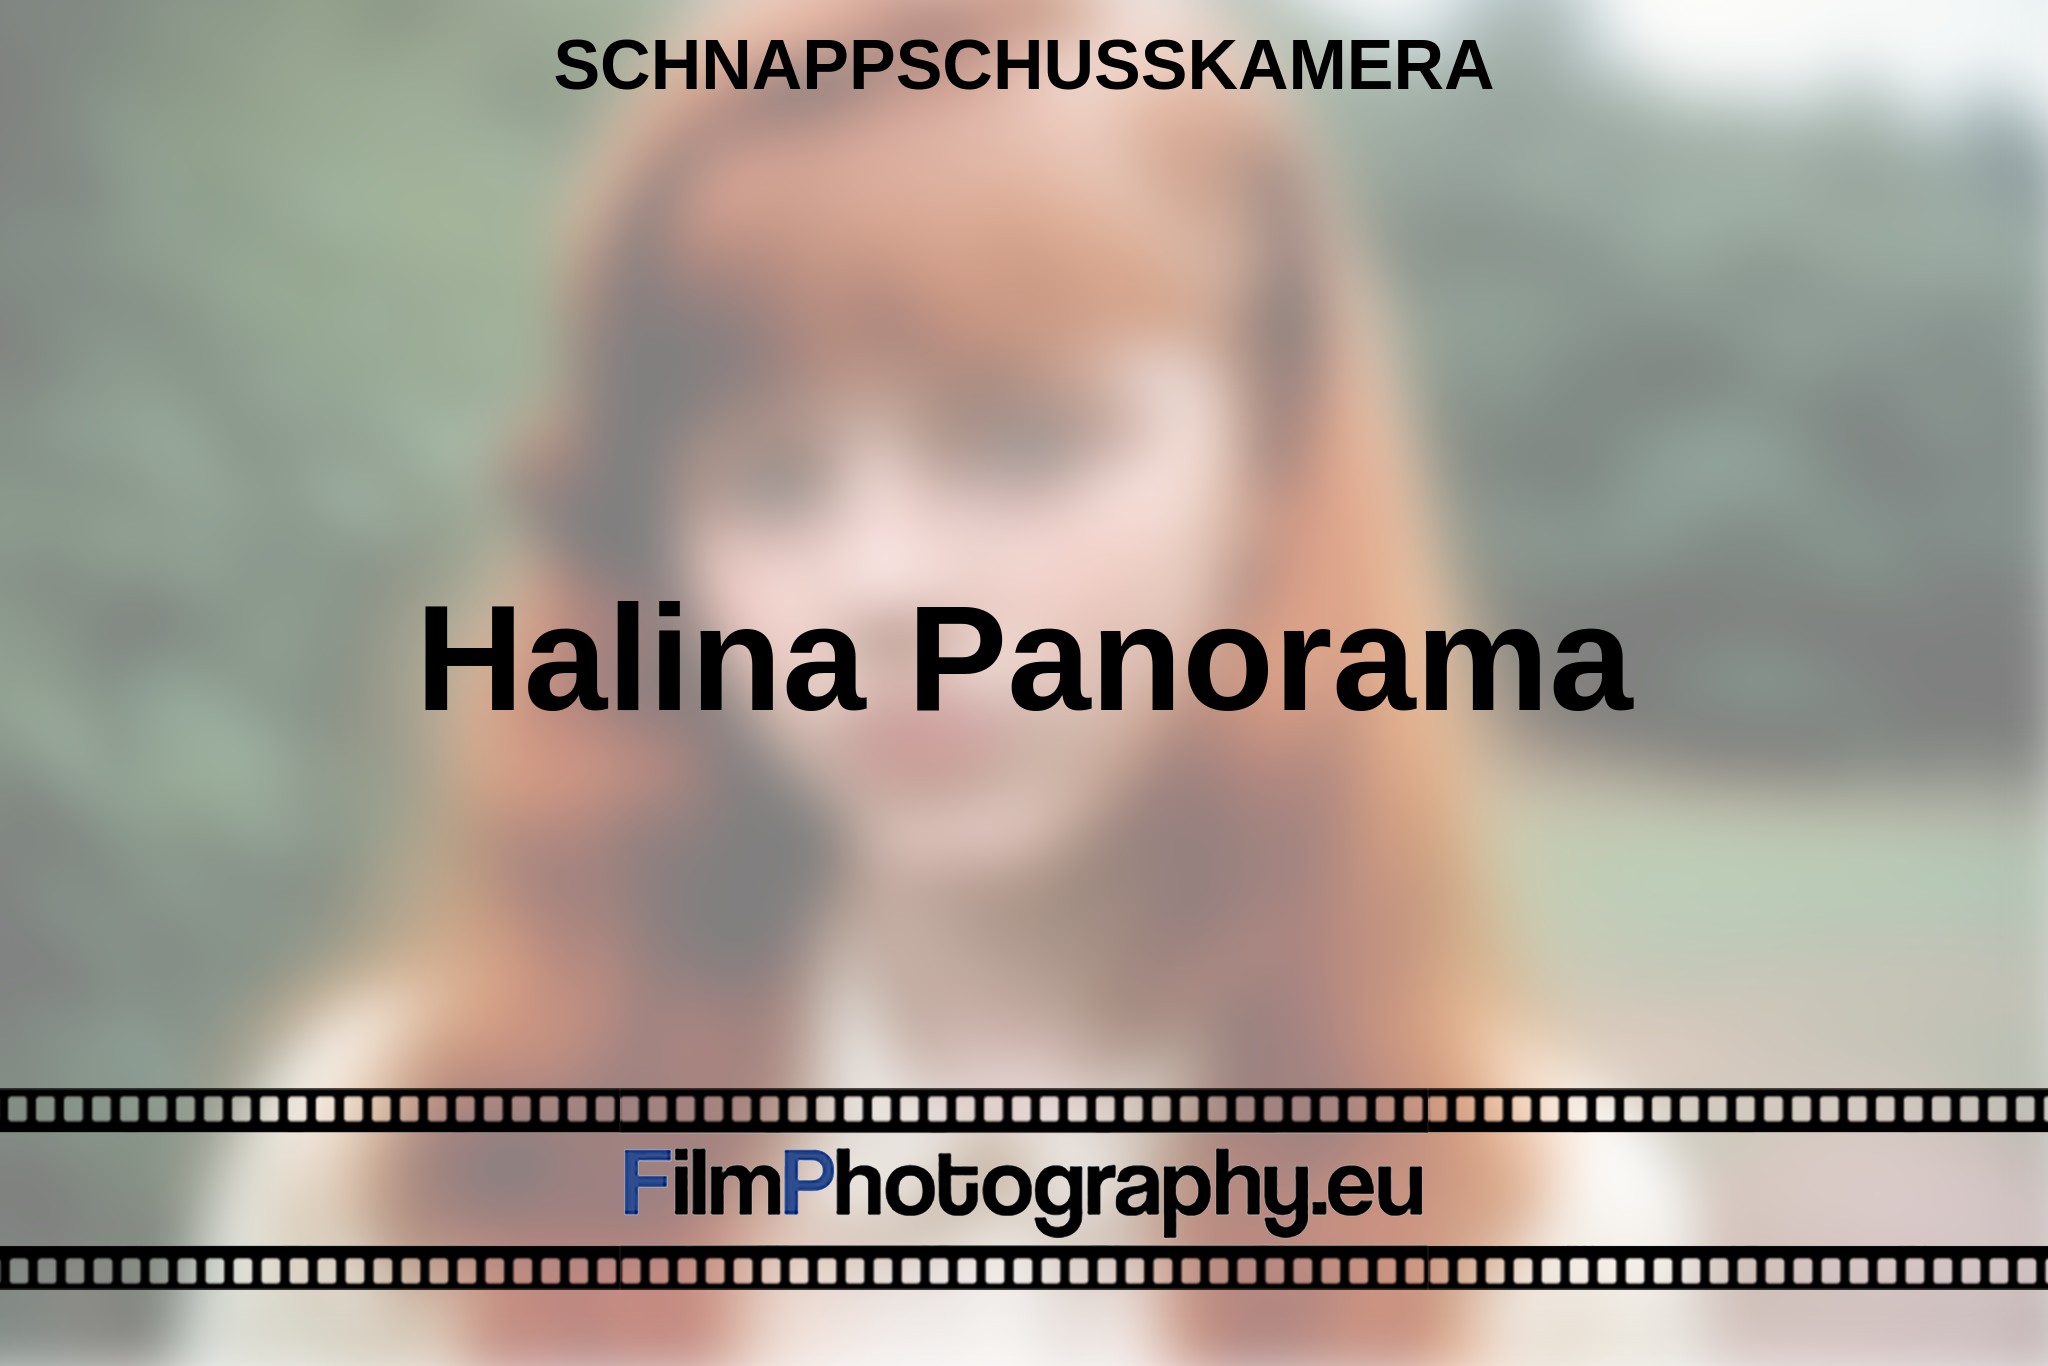 halina-panorama-schnappschusskamera-bnv.jpg